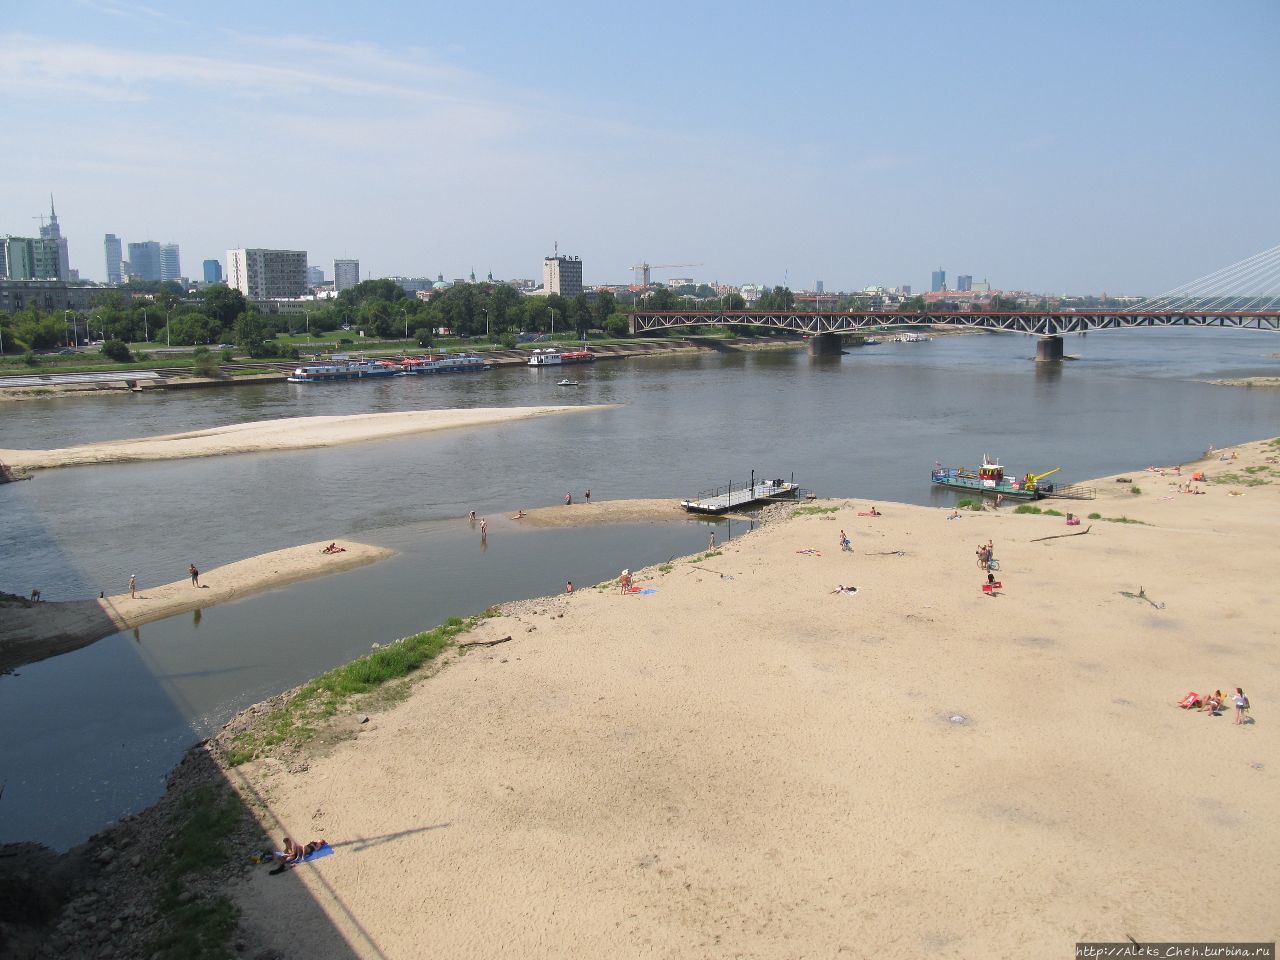 Как видно на фото Висла в Варшаве мало похожа на полноводную реку. Польша